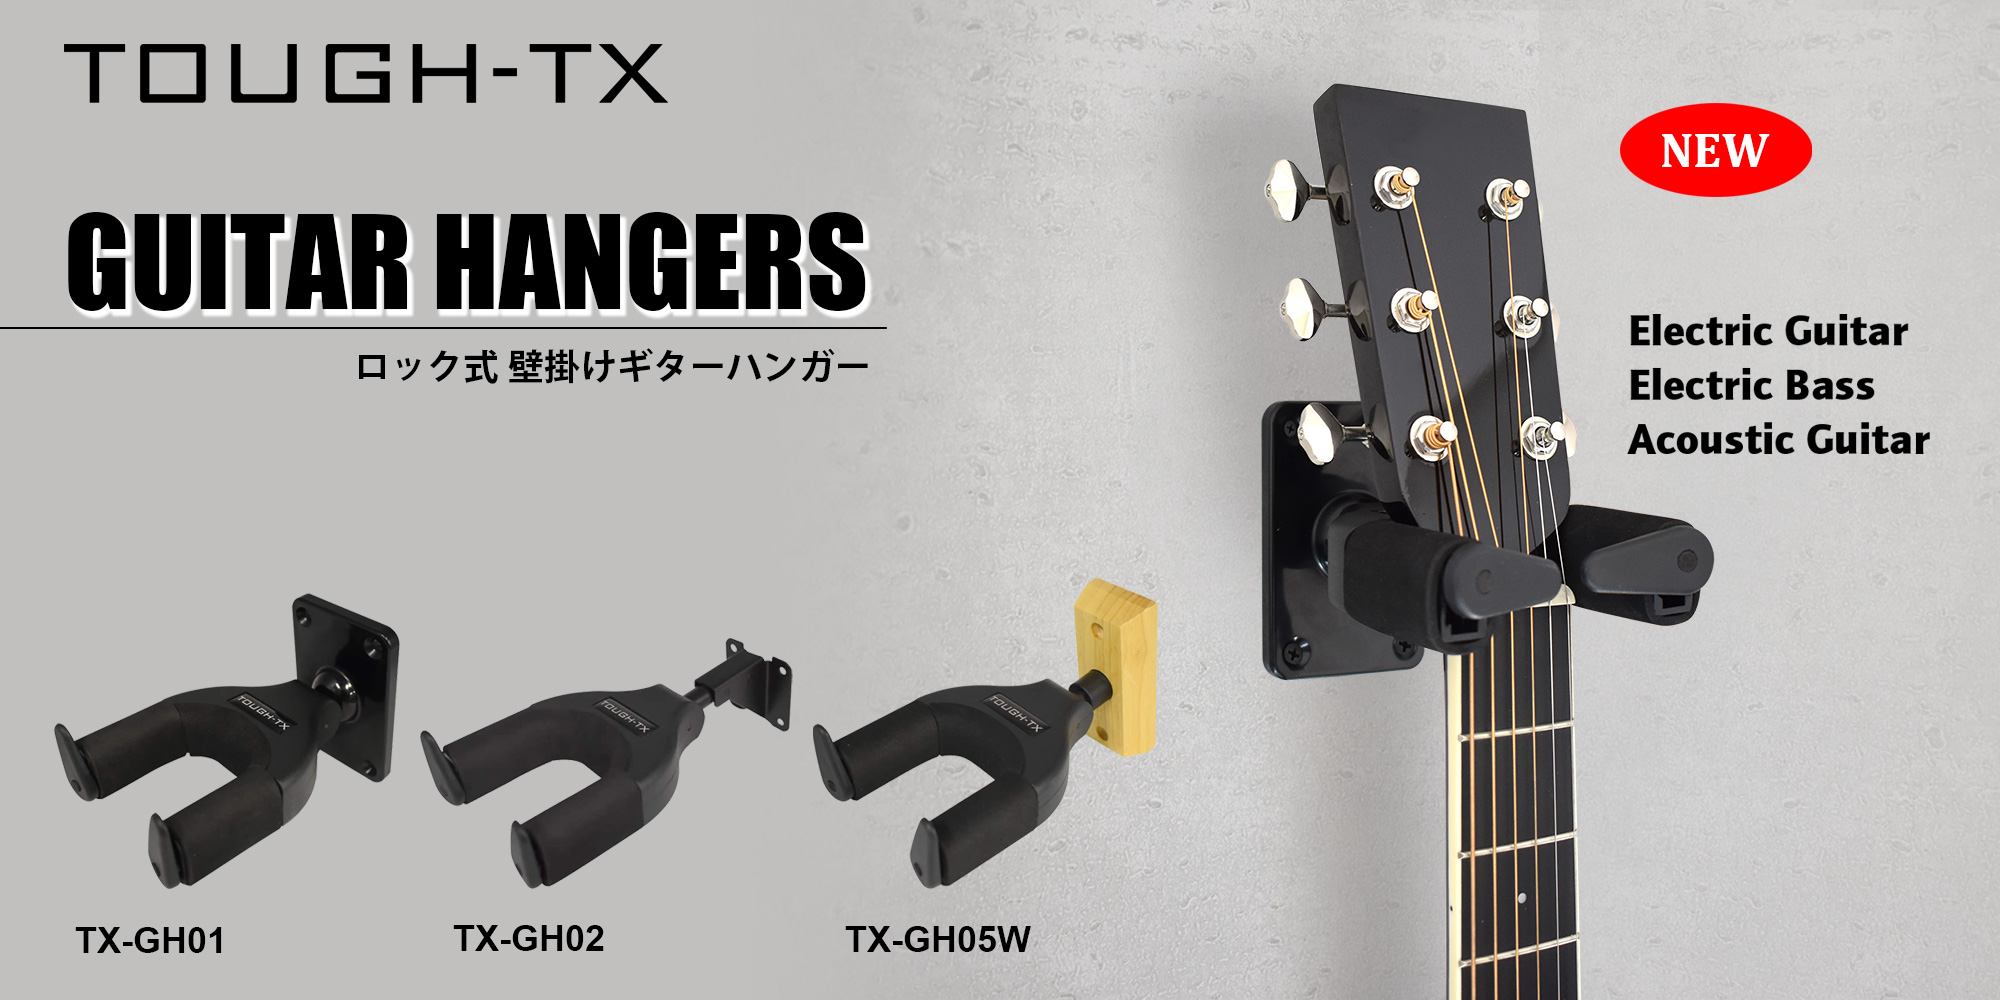 TOUGH-TX ロック式 壁掛けギターハンガー